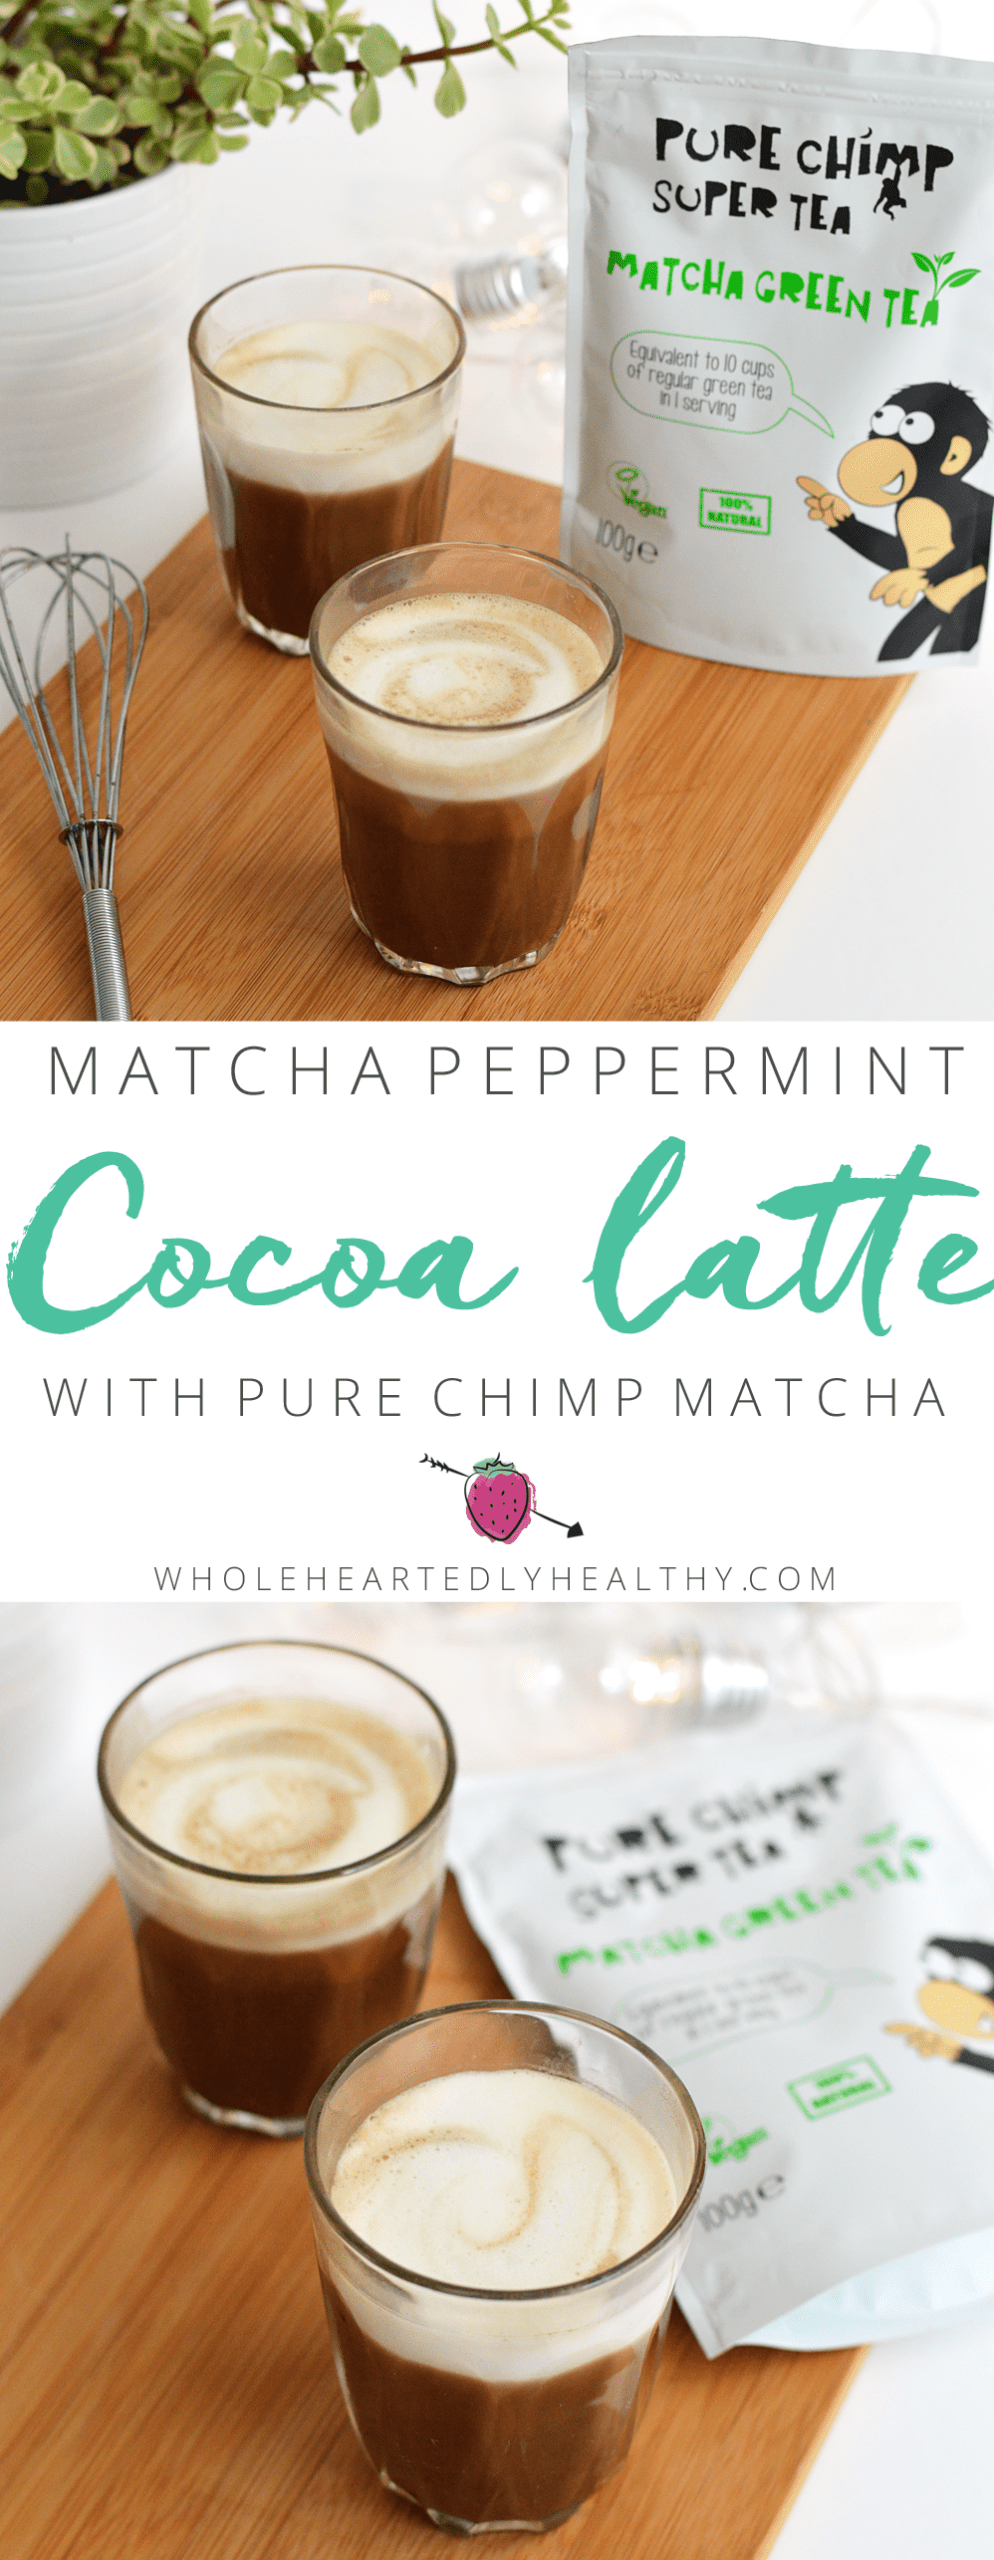 Matcha cocoa peppermint latte